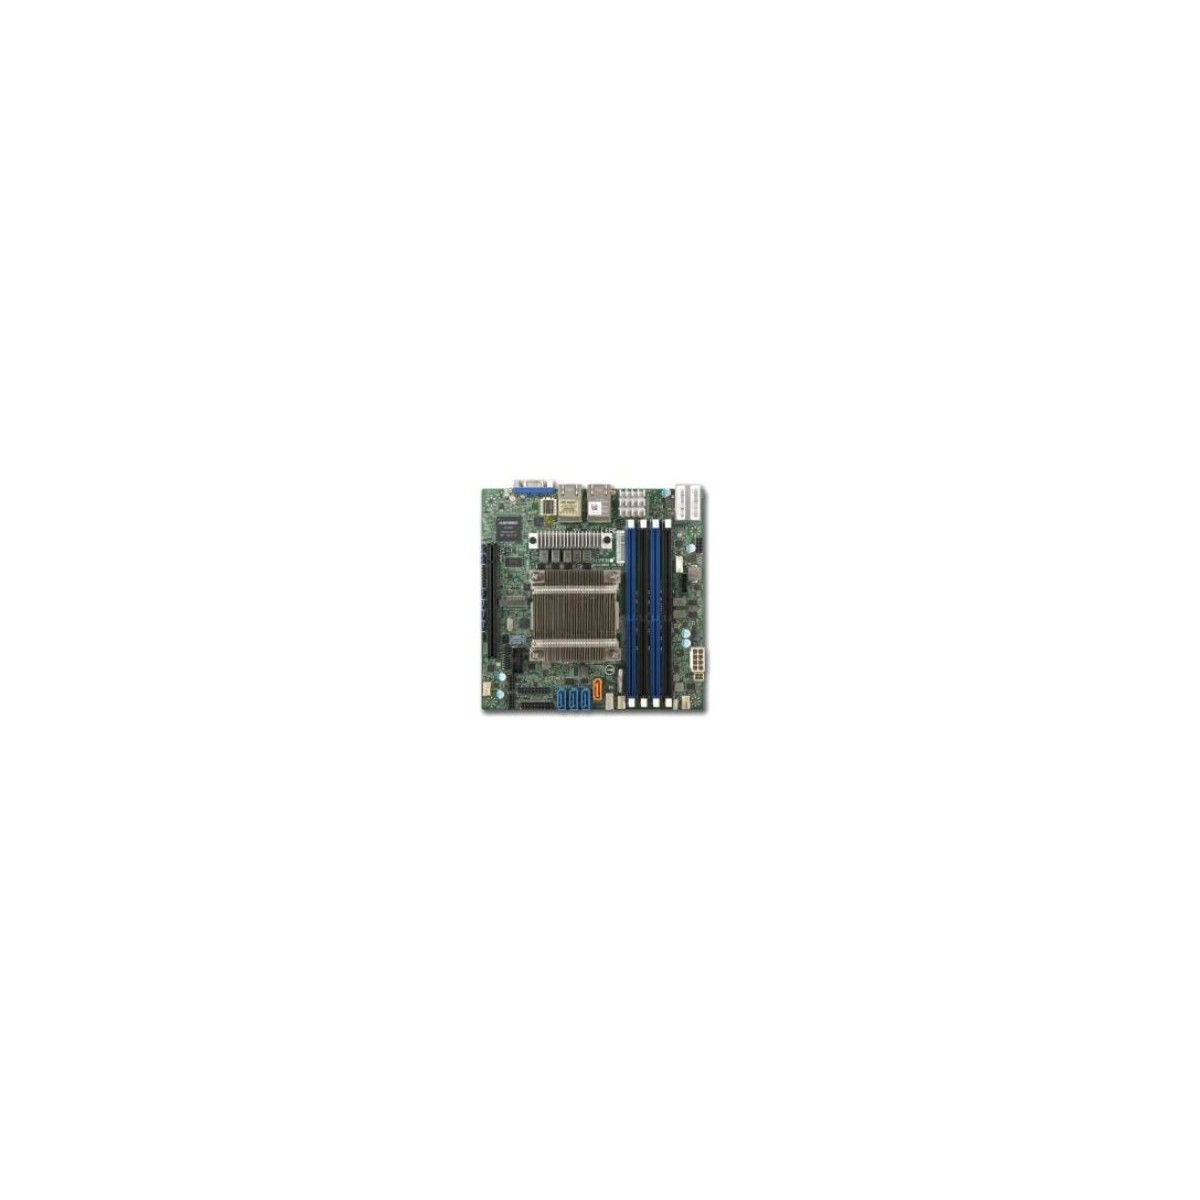 Supermicro Mainboard M11SDV-4C-LN4F AMD EPYC™ 3151 (4Cfrasl8T) - AMD Motherboard - EPYC 3151 SoC